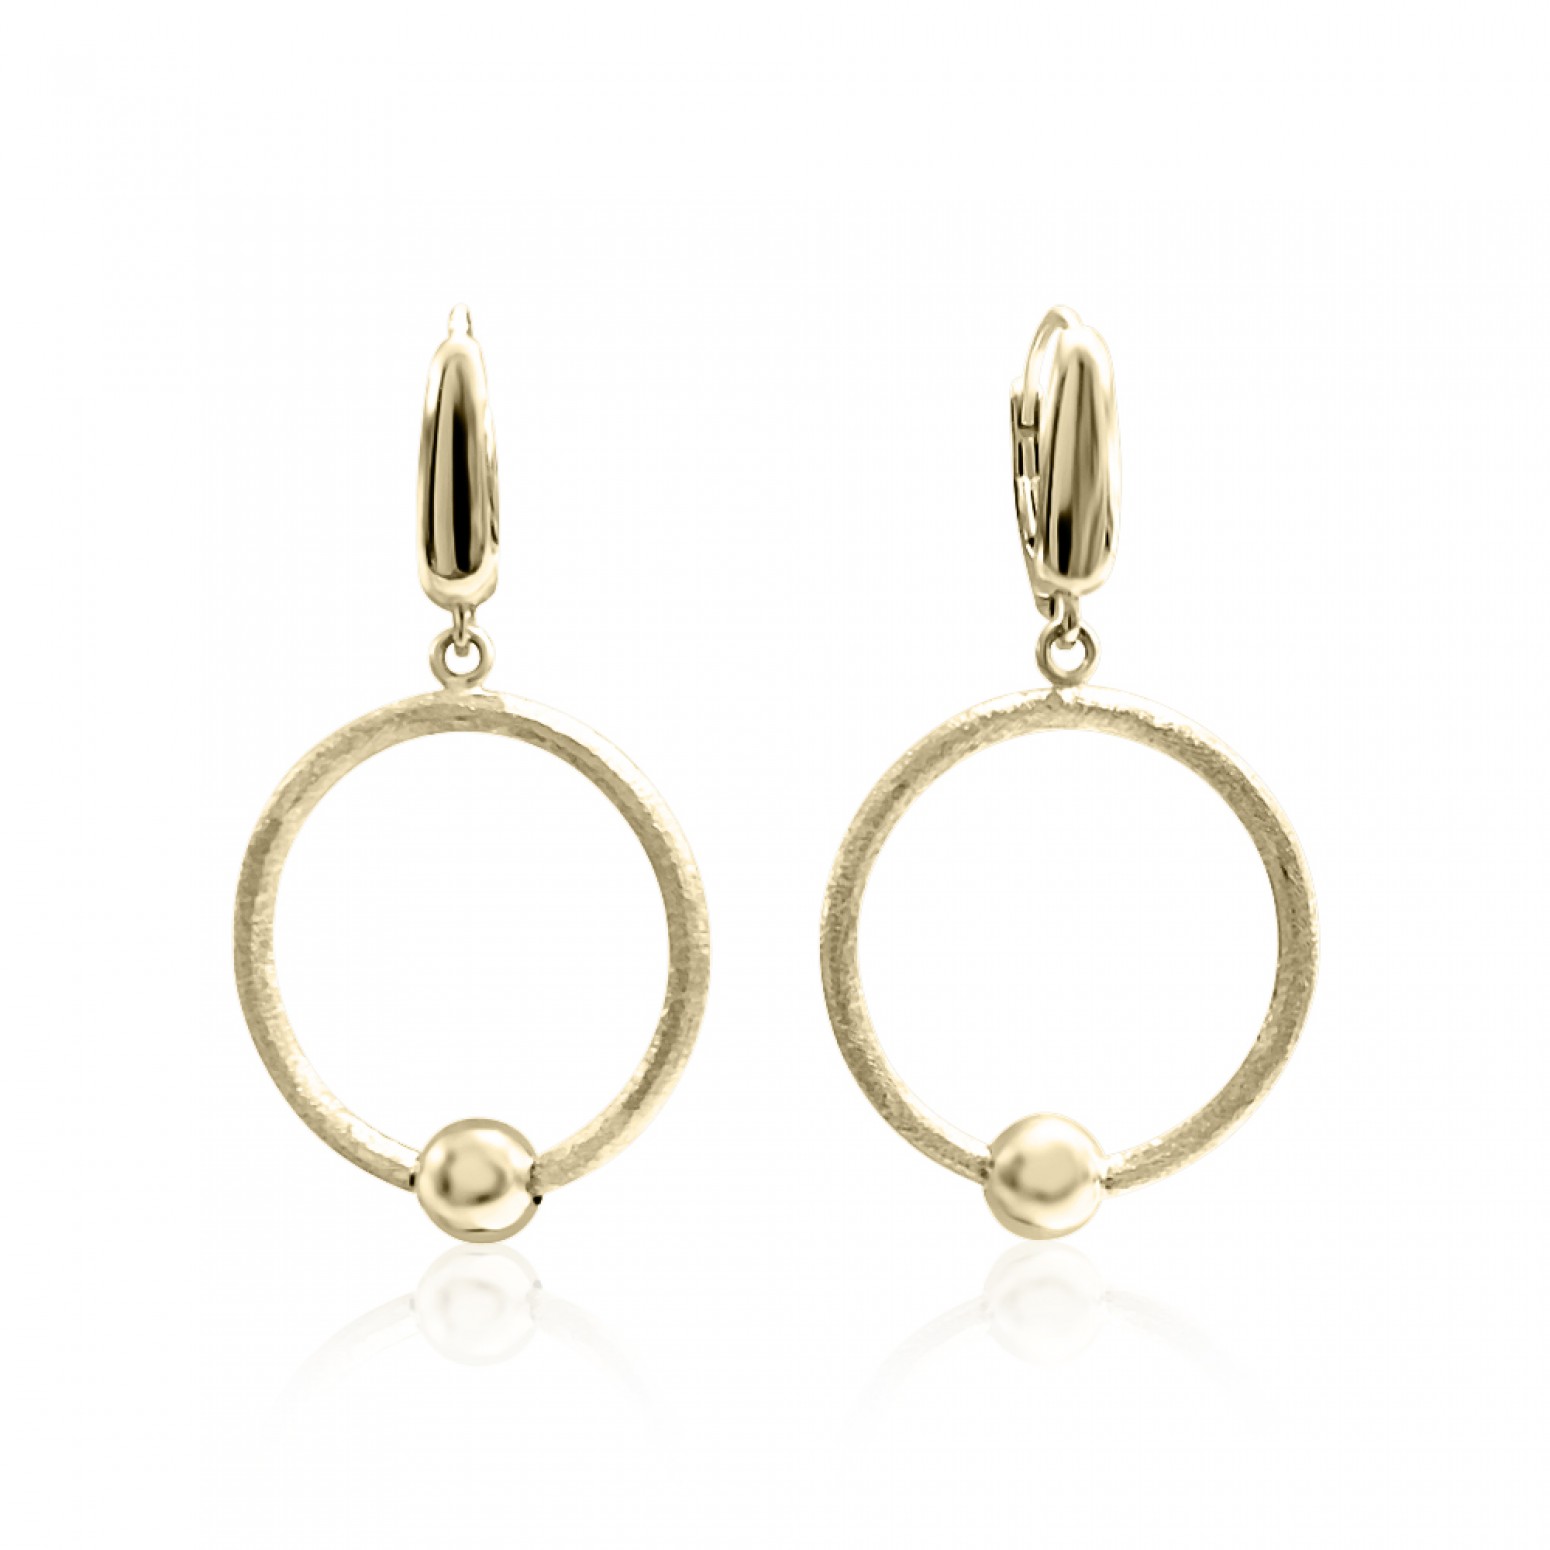 Dangle earrings K14 gold, sk3105 EARRINGS Κοσμηματα - chrilia.gr